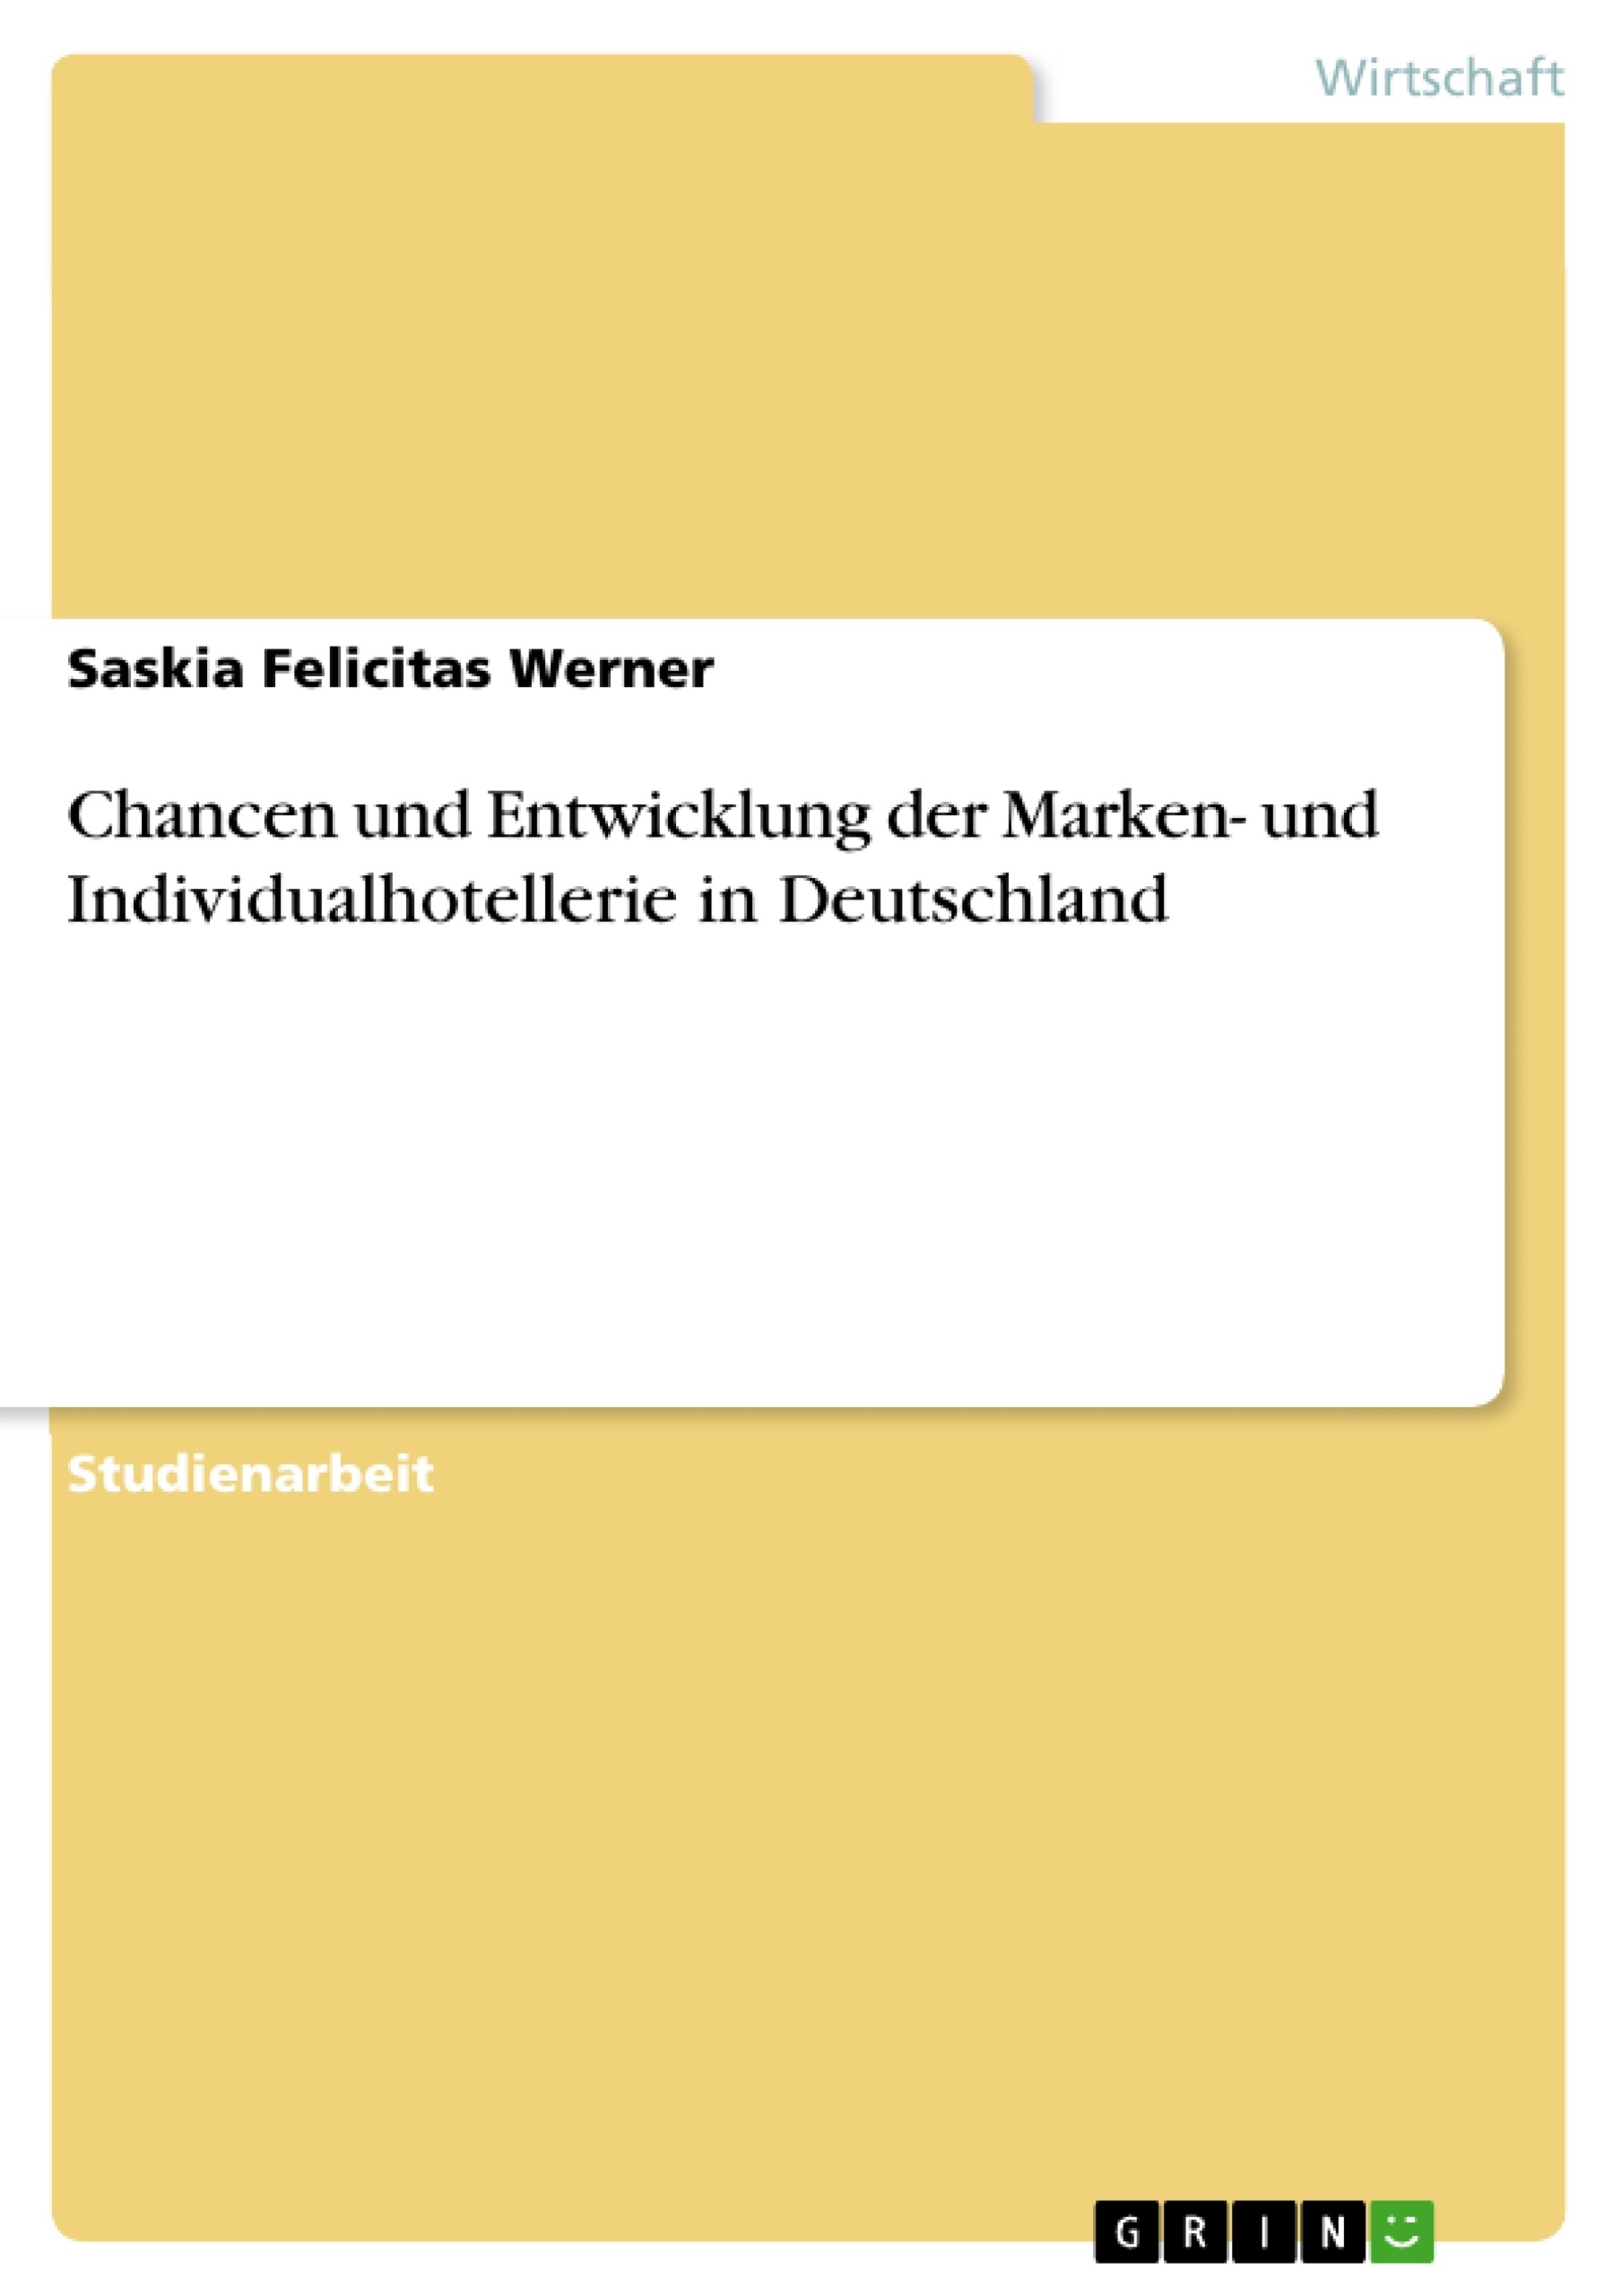 Titre: Chancen und Entwicklung der Marken- und Individualhotellerie in Deutschland